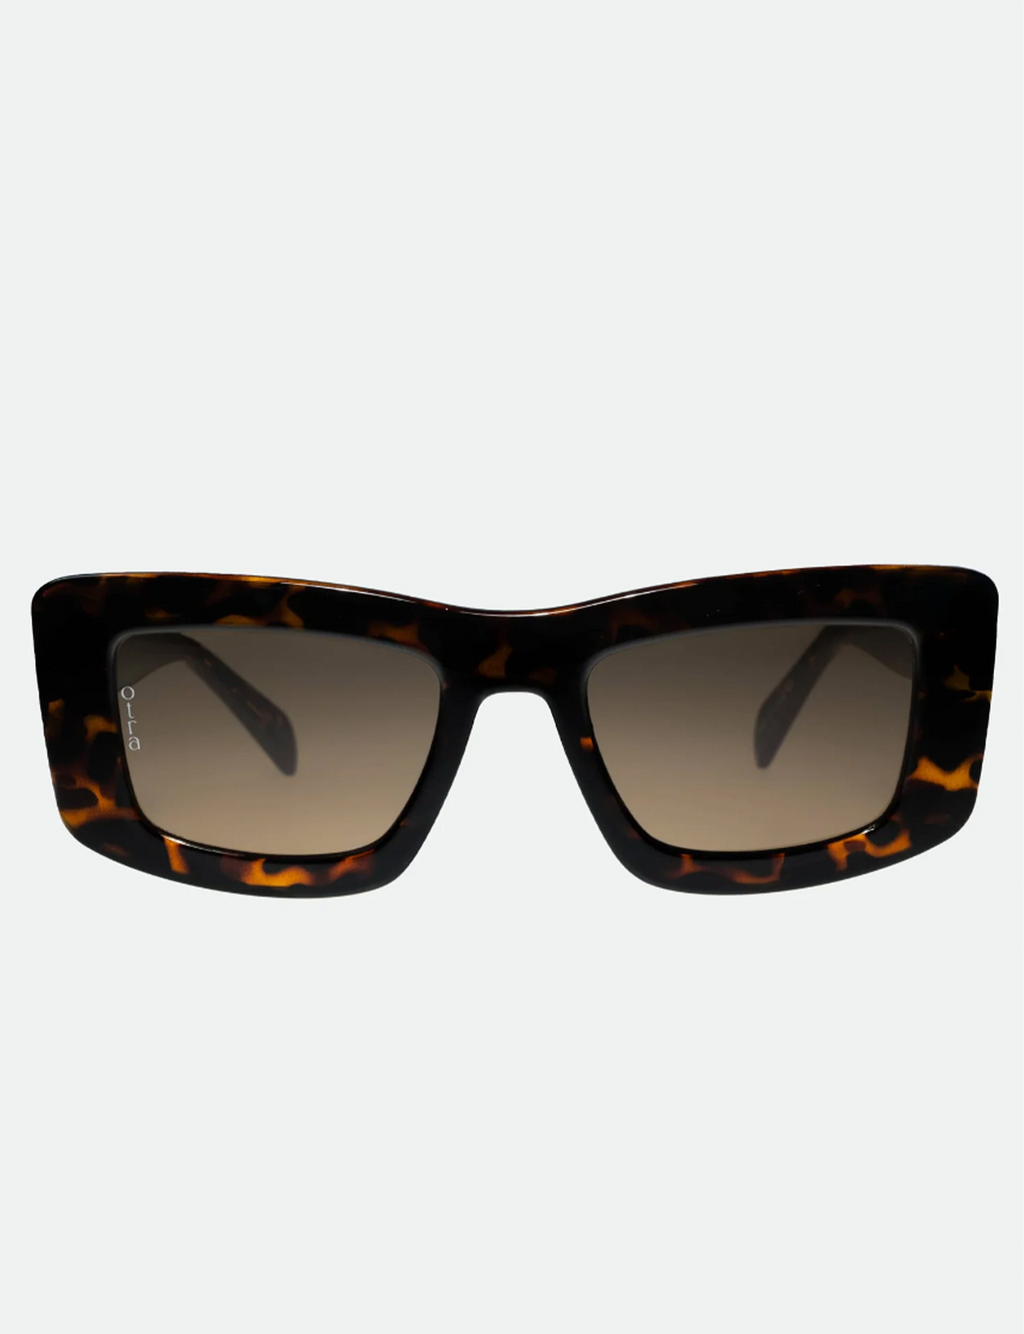 Marsha Sunglasses, Tort/Brown